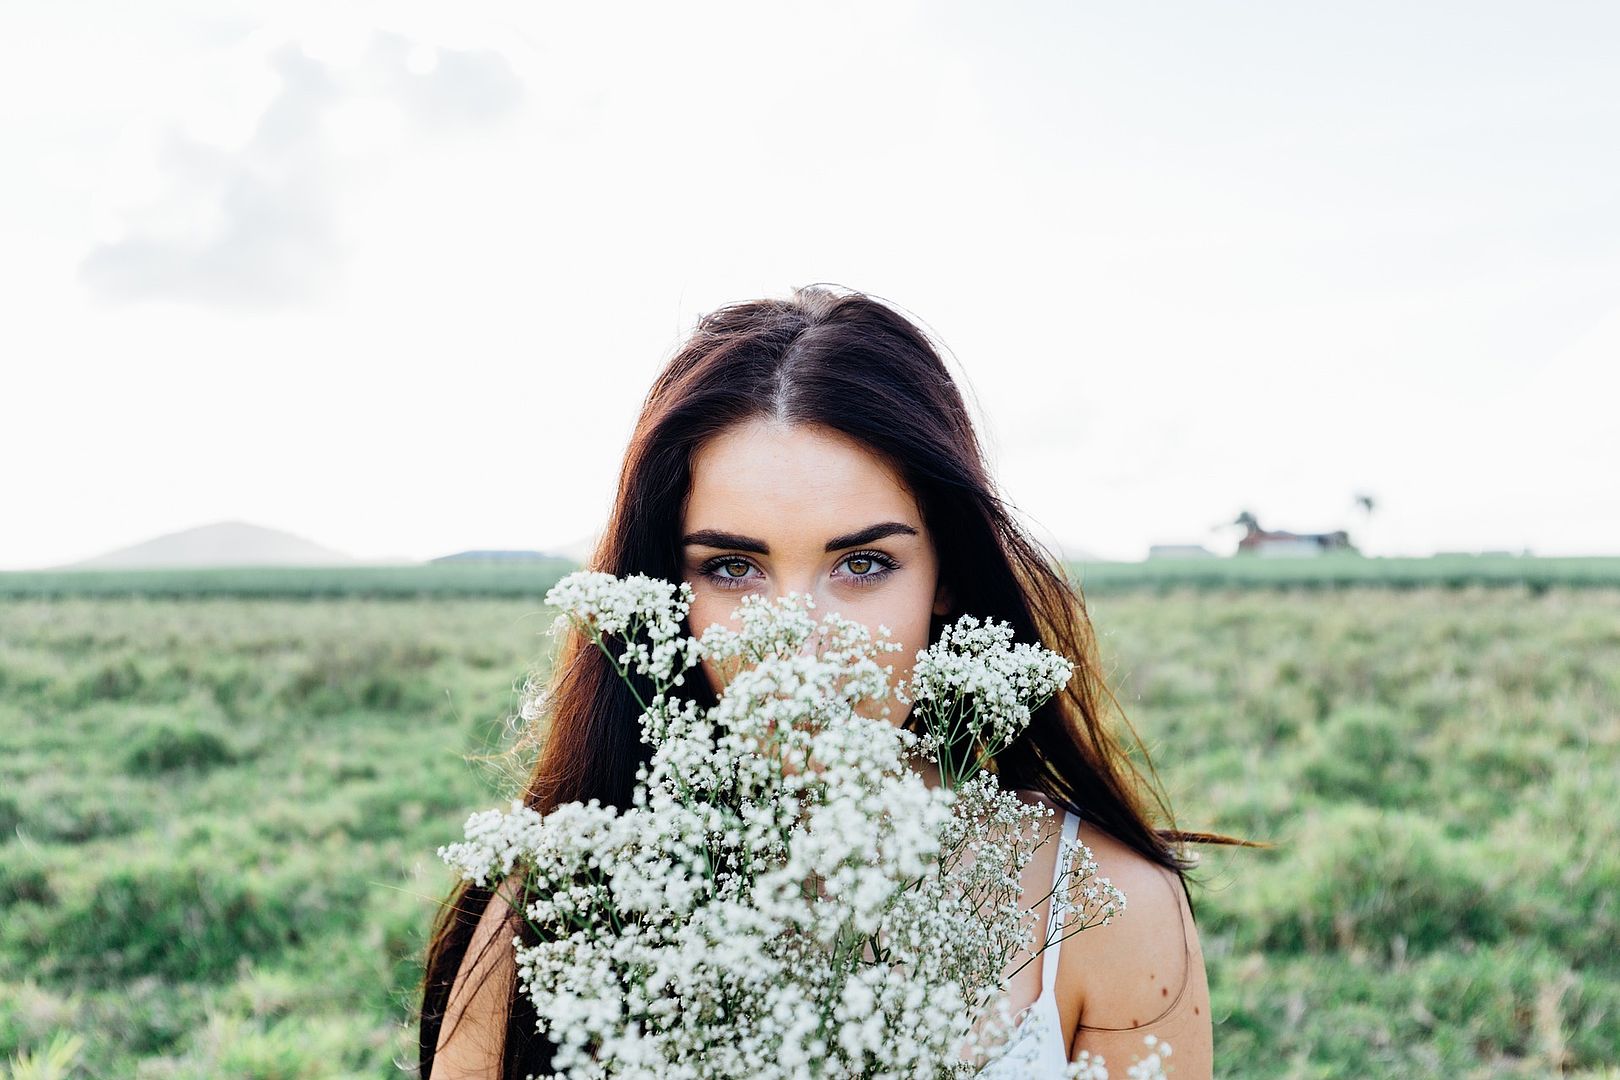 Junge aussehende Frau steht vor einem Feld und verdeckt ihr Gesicht zur Hälfte mit Blumen, sie hat braune Augen und lange braune Haare